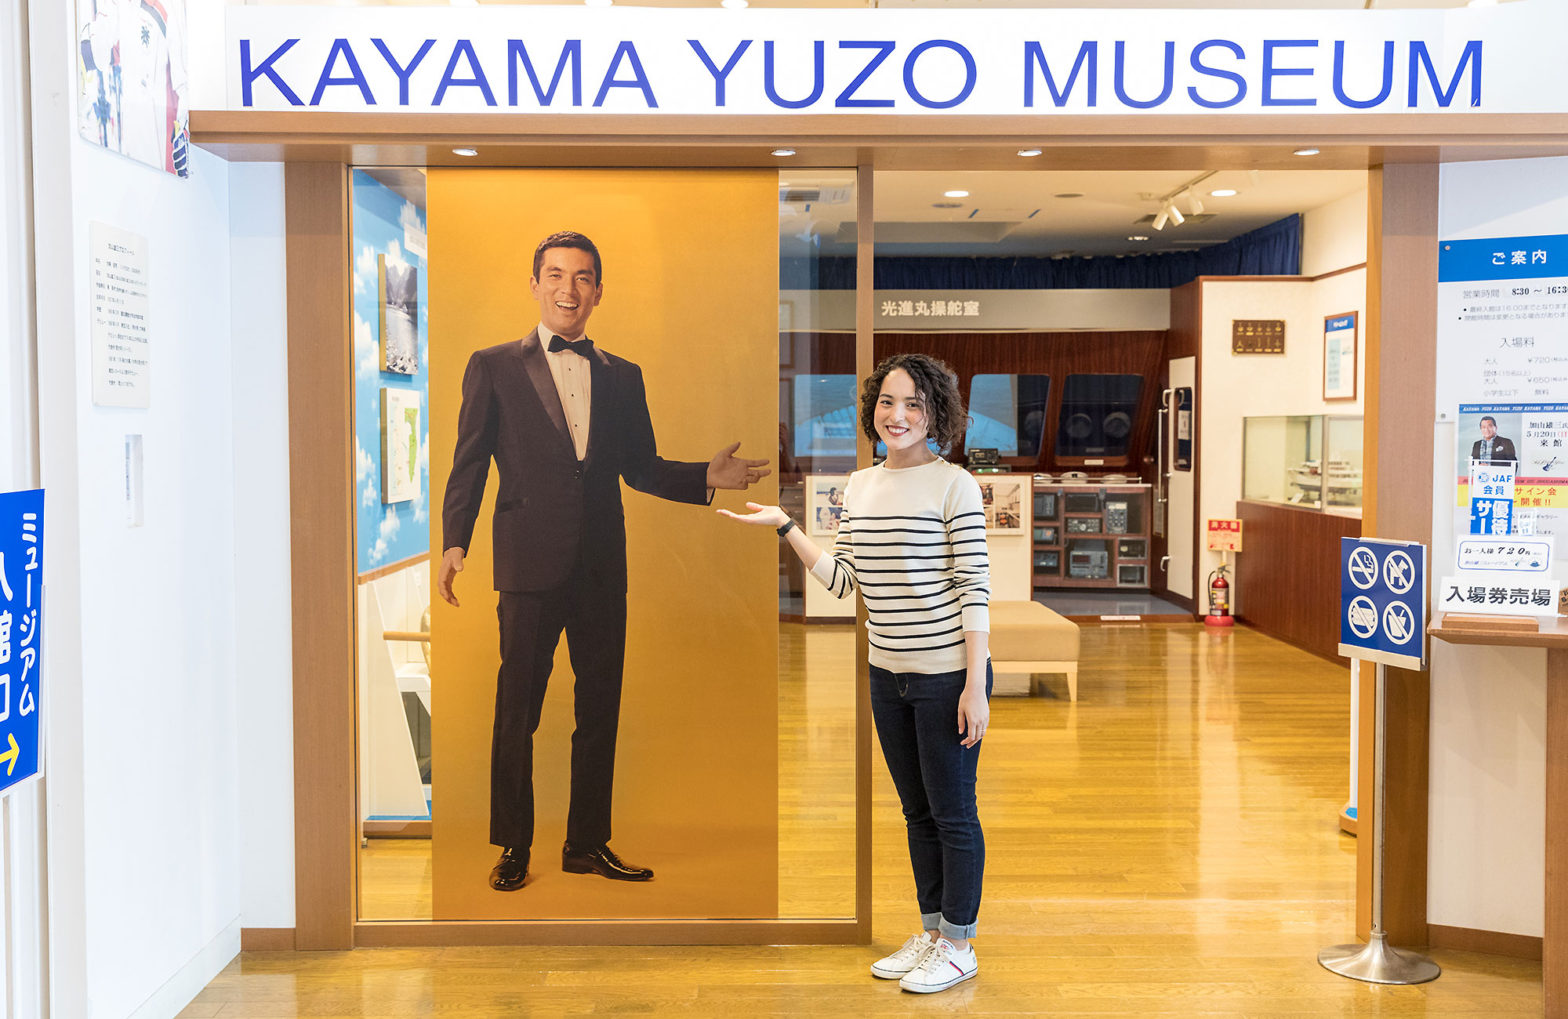 Kayama Yuzo Museum